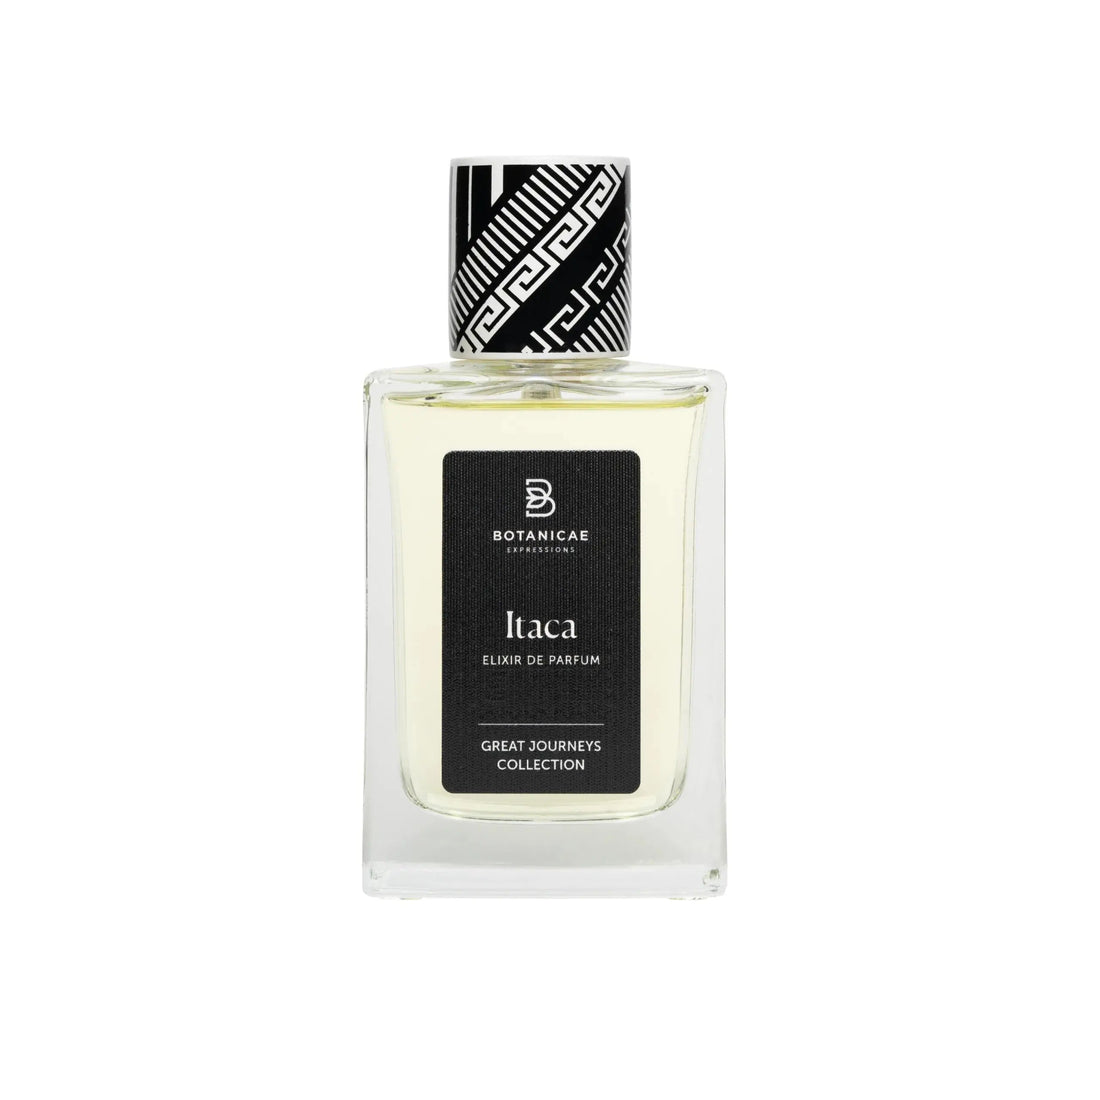 Itaca Elixir de Parfum Botanicae - 75 毫升